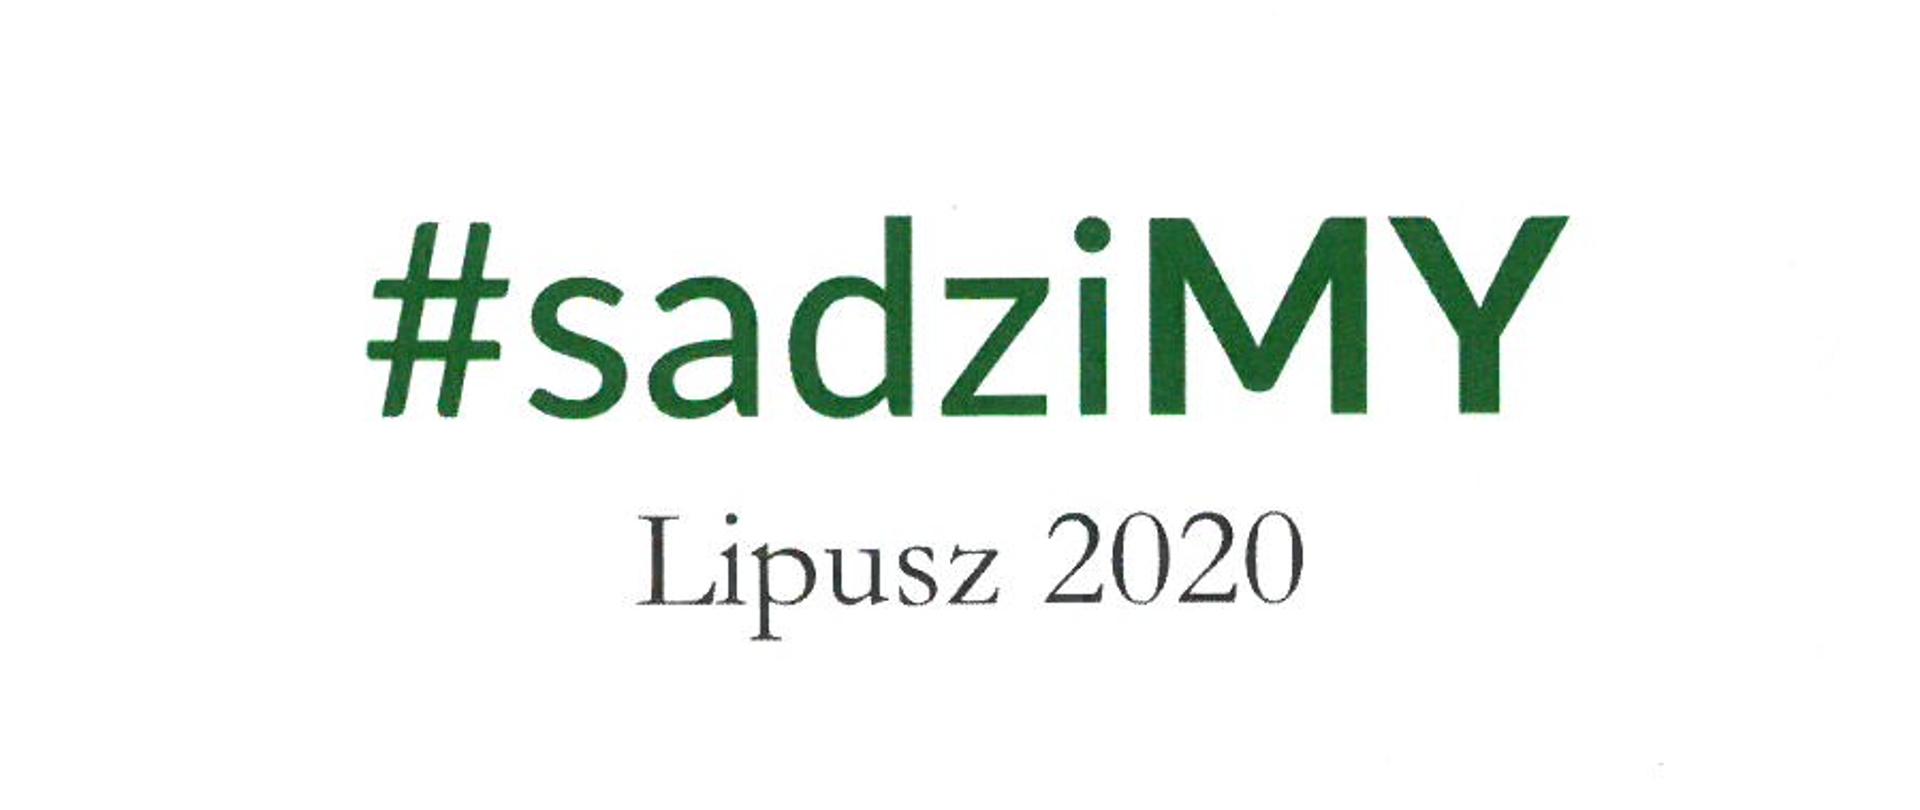 Dyplom dla Komendy Powiatowej PSP w Wejherowie za udział w akcji #sadziMY Lipusz 2020 podpisany przez Parę Prezydencką RP.